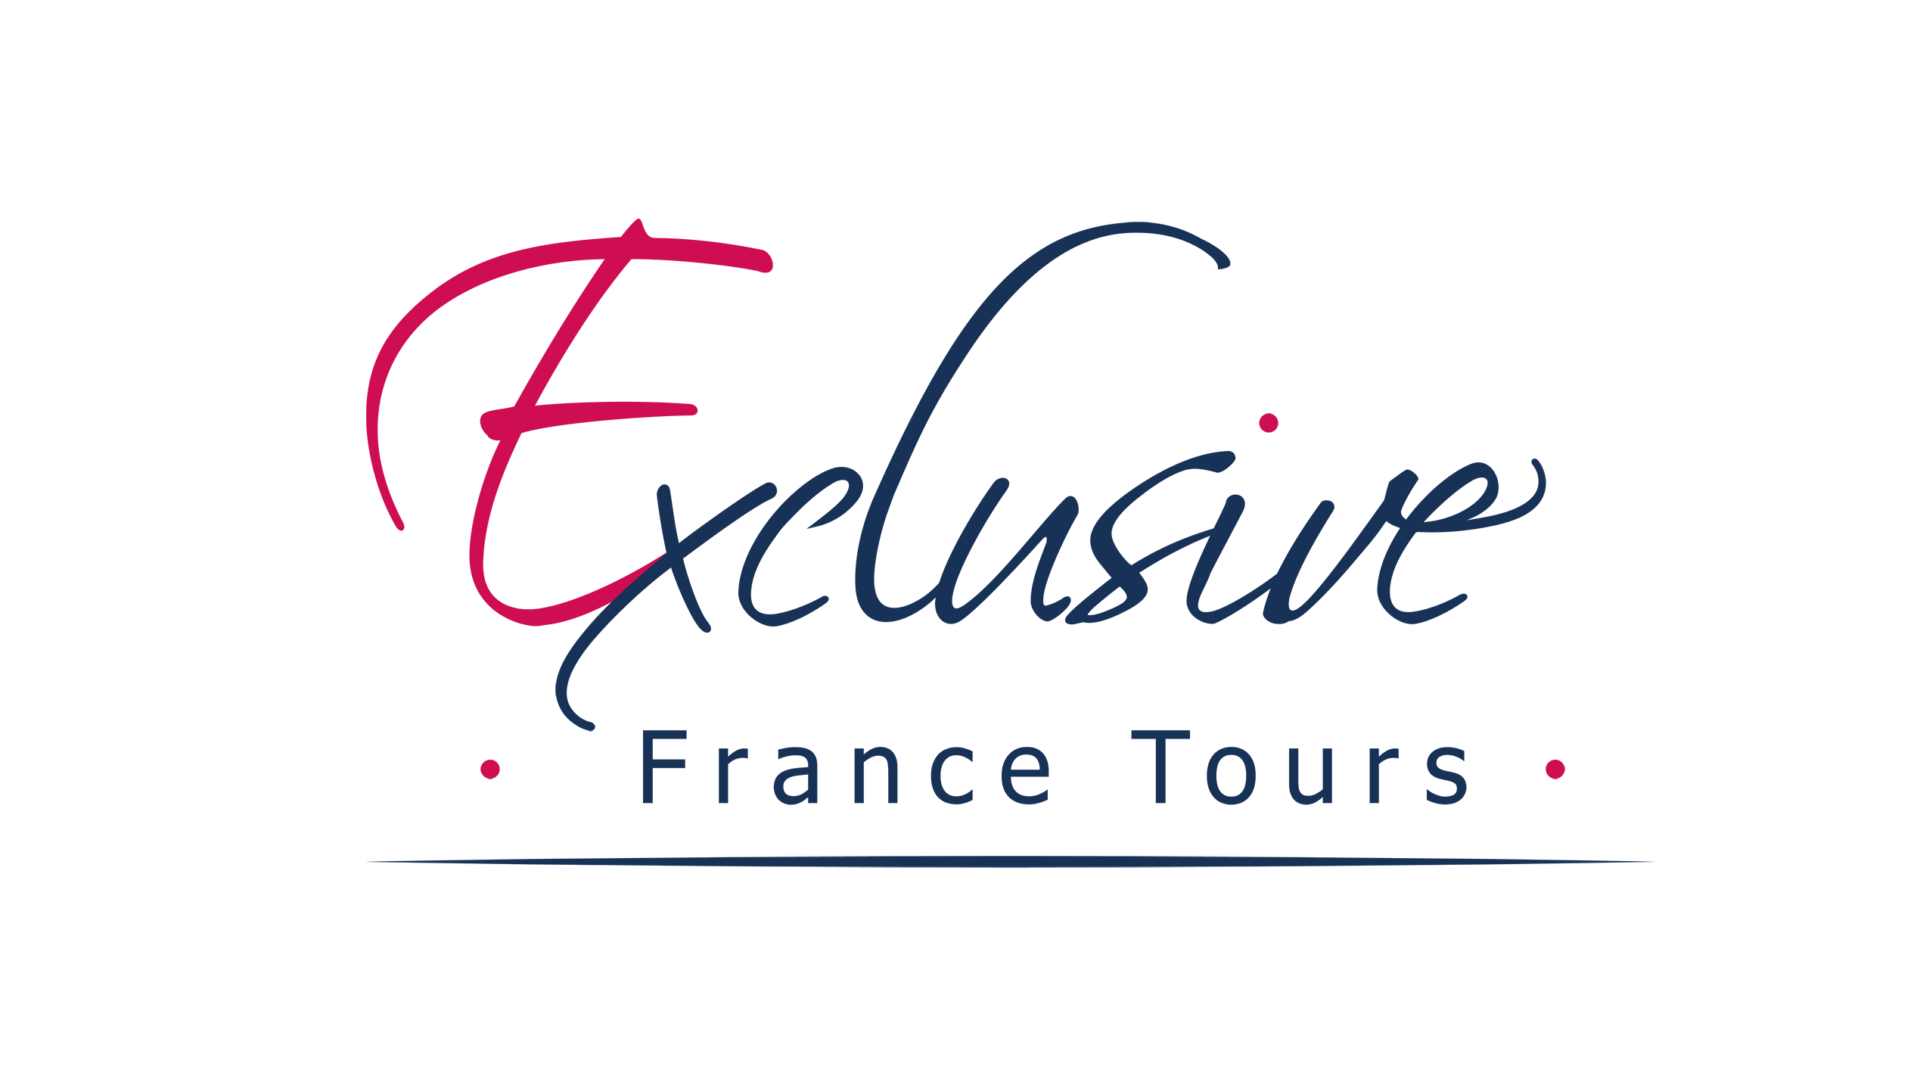 exclusive france tours logo transparent blue